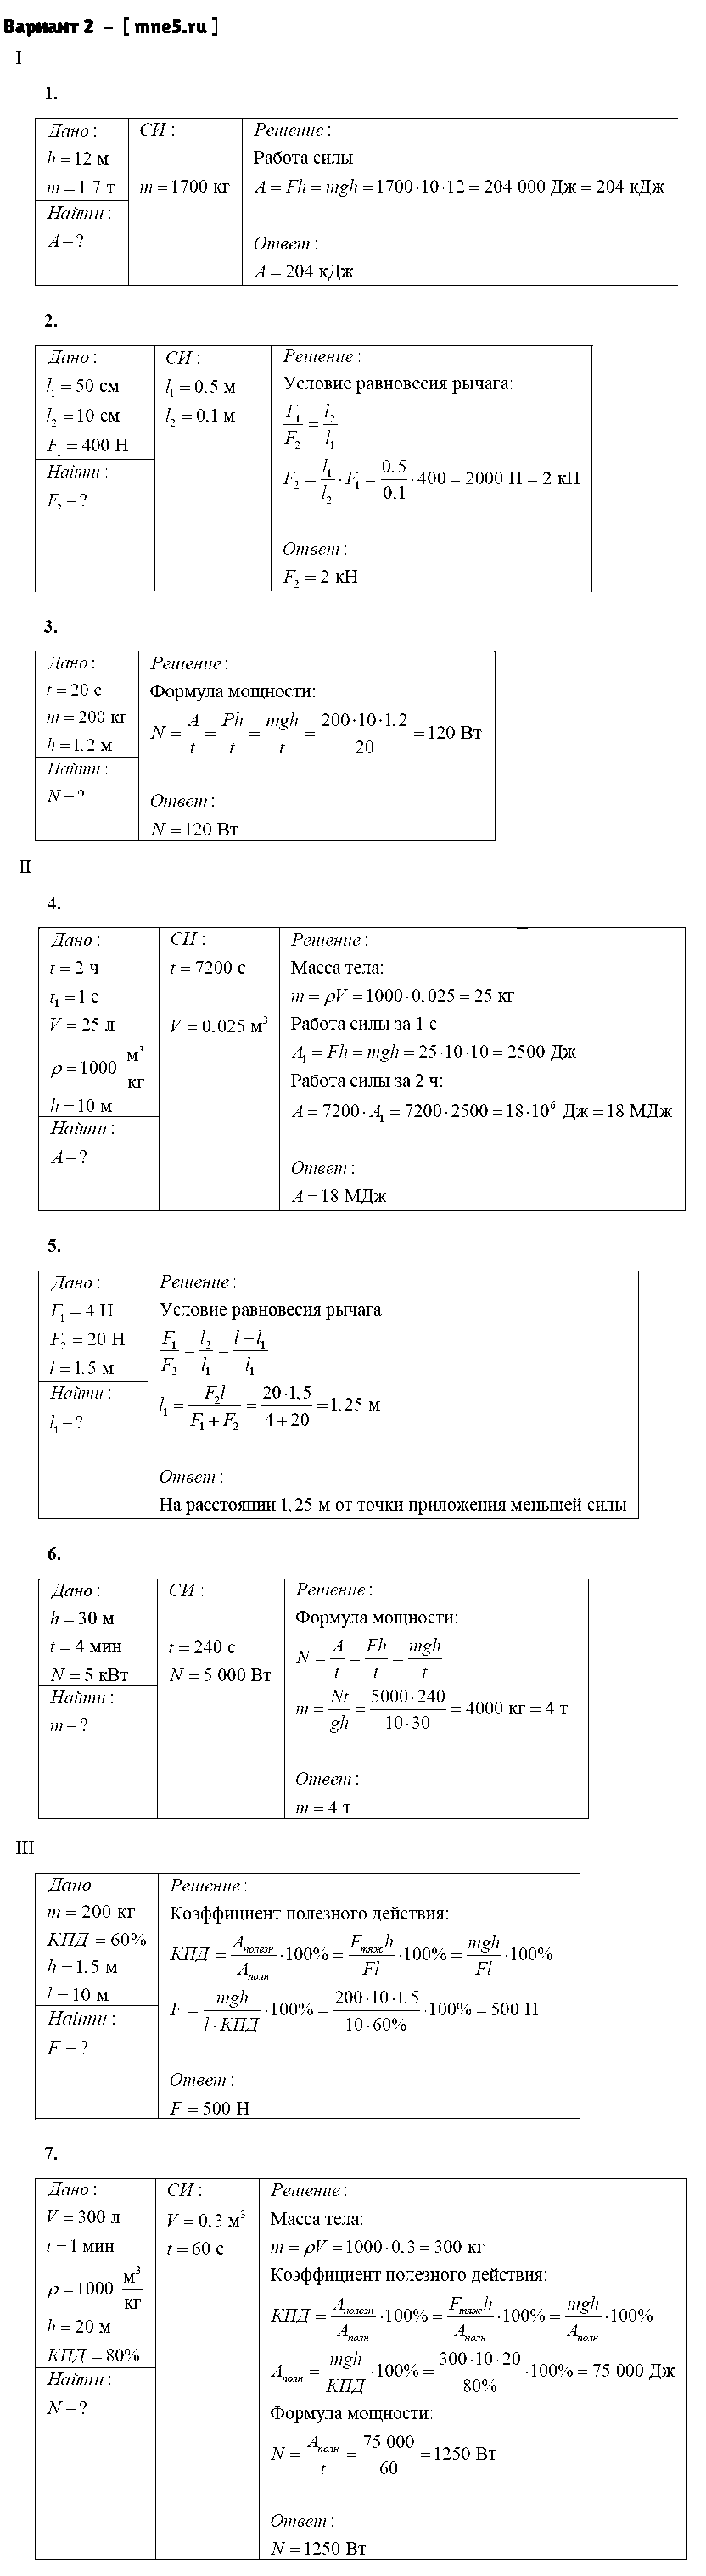 ГДЗ Физика 7 класс - Вариант 2